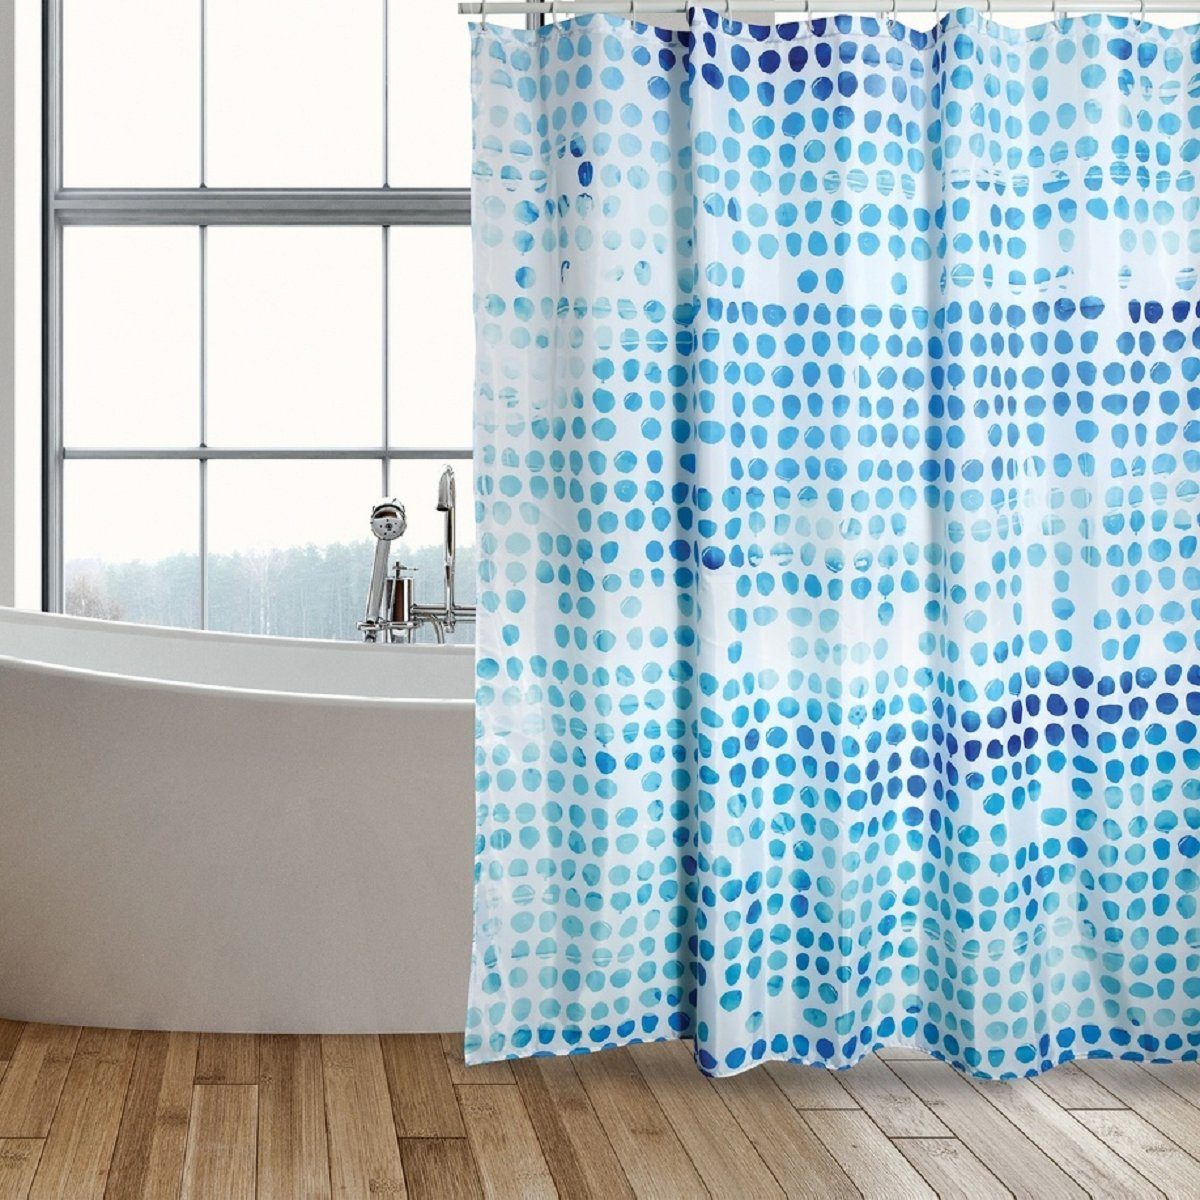 MSV Duschvorhang »WATERCOLOR« Breite 180 cm, Textil-Duschvorhang, 100%  Polyester, wasserabweisend, Anti-Schimmel-Effekt, waschbar 30°, Farbe weiß  / blau, 180 x 200 cm